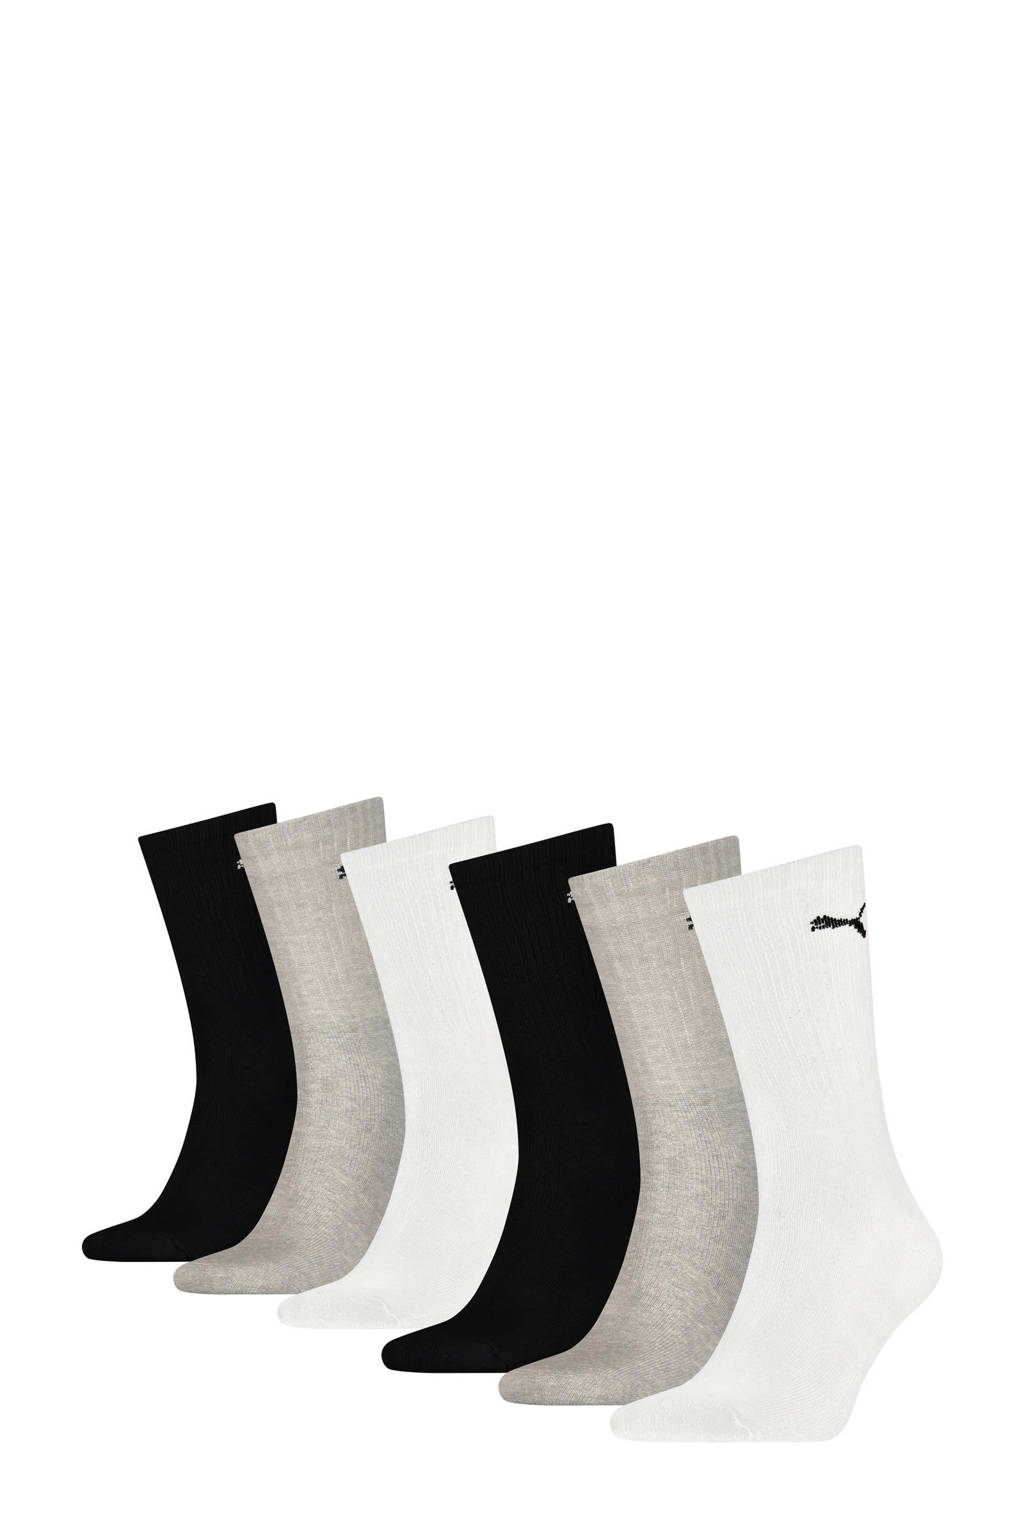 Puma sokken - set van 6 wit/zwart/grijs, Wit/zwart/grijs